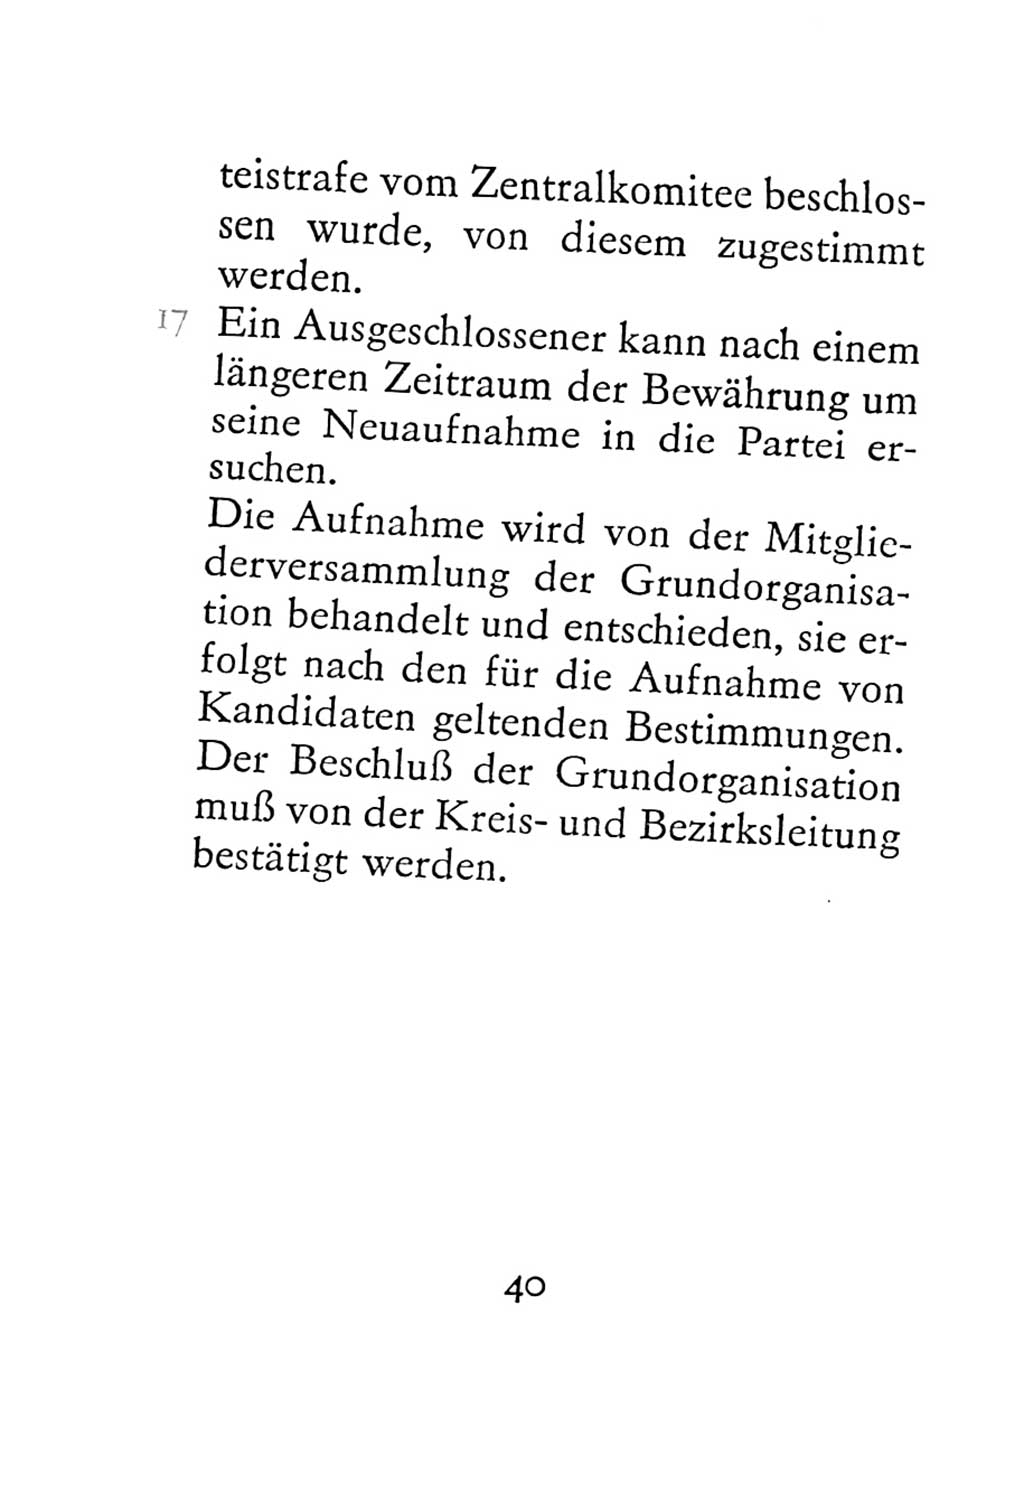 Statut der Sozialistischen Einheitspartei Deutschlands (SED) 1967, Seite 40 (St. SED DDR 1967, S. 40)